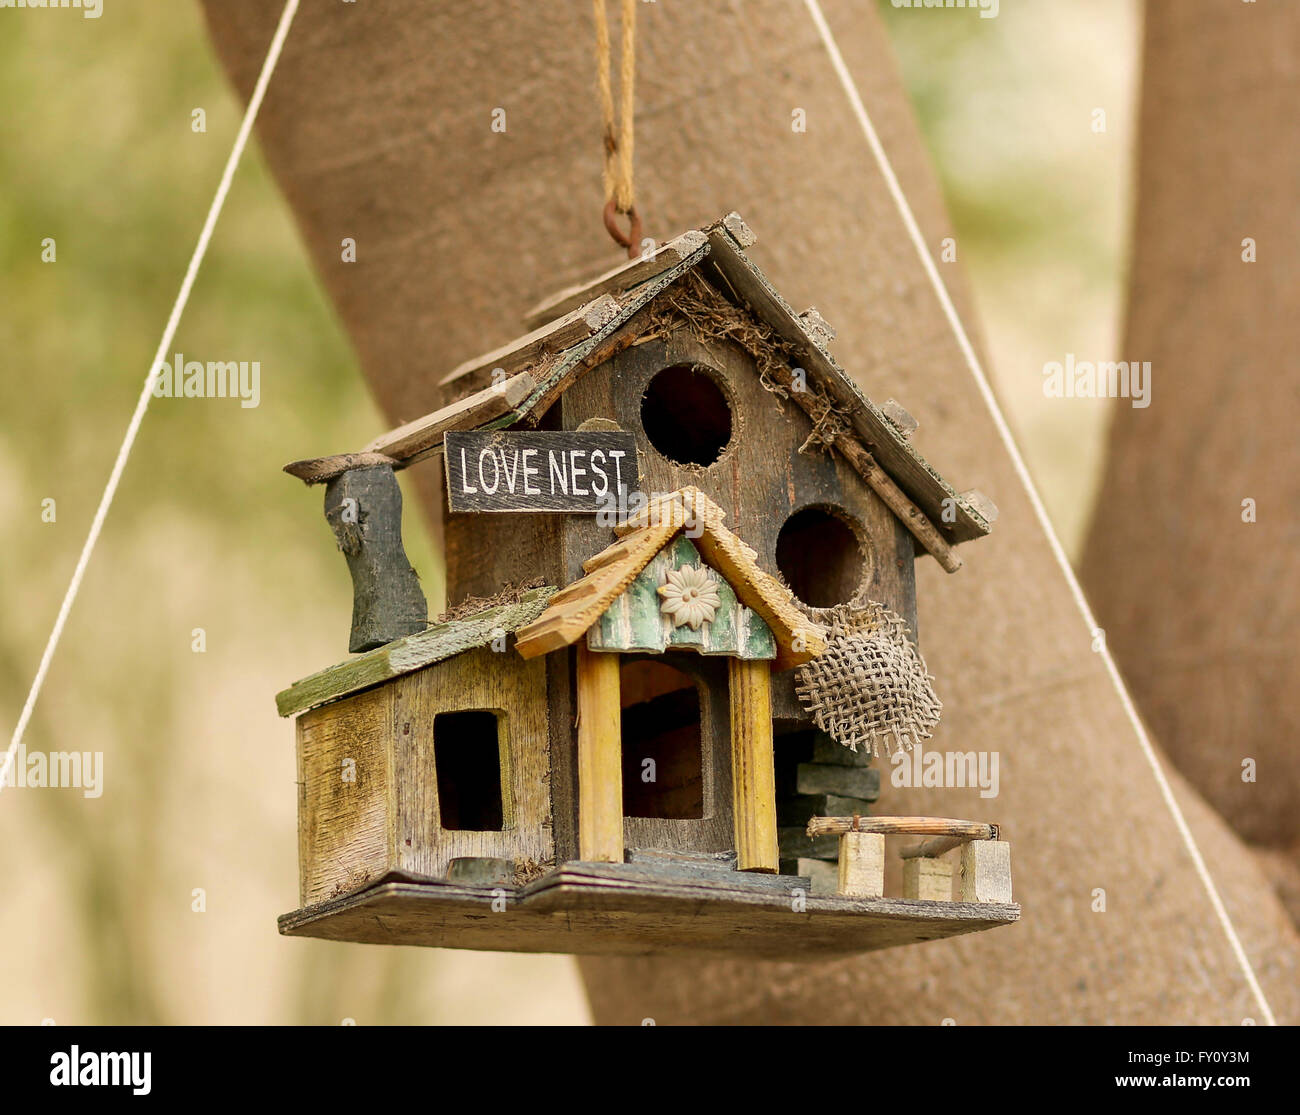 Nido, dolce nido. Davvero fantastico casa per gli uccelli, bella decorazione per il tuo giardino Foto Stock